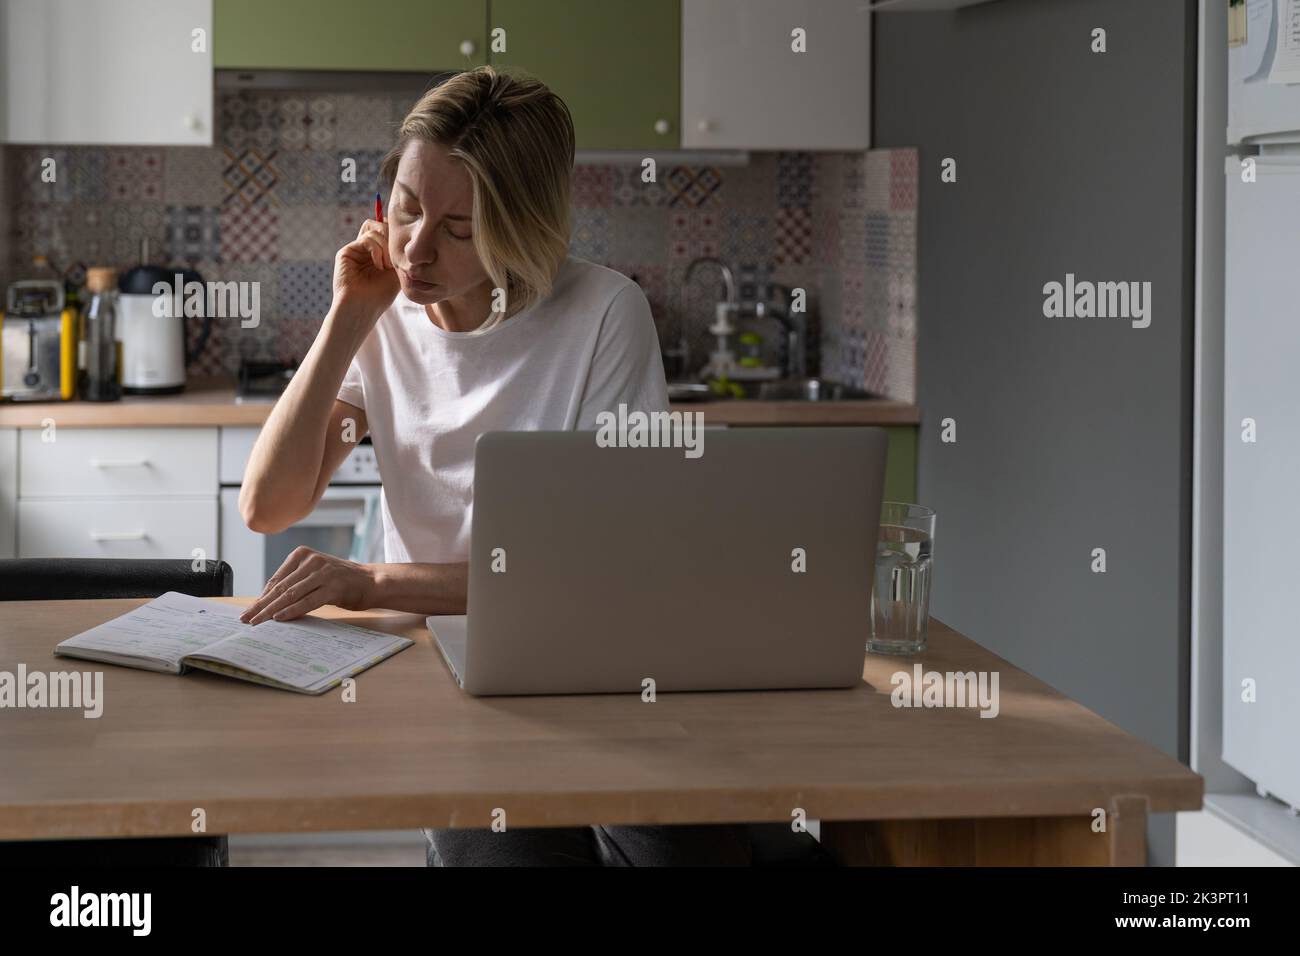 Una ocupada mujer de mediana edad marca marcas en el cuaderno y busca un trabajo remunerado a través del ordenador portátil en la cocina. Foto de stock